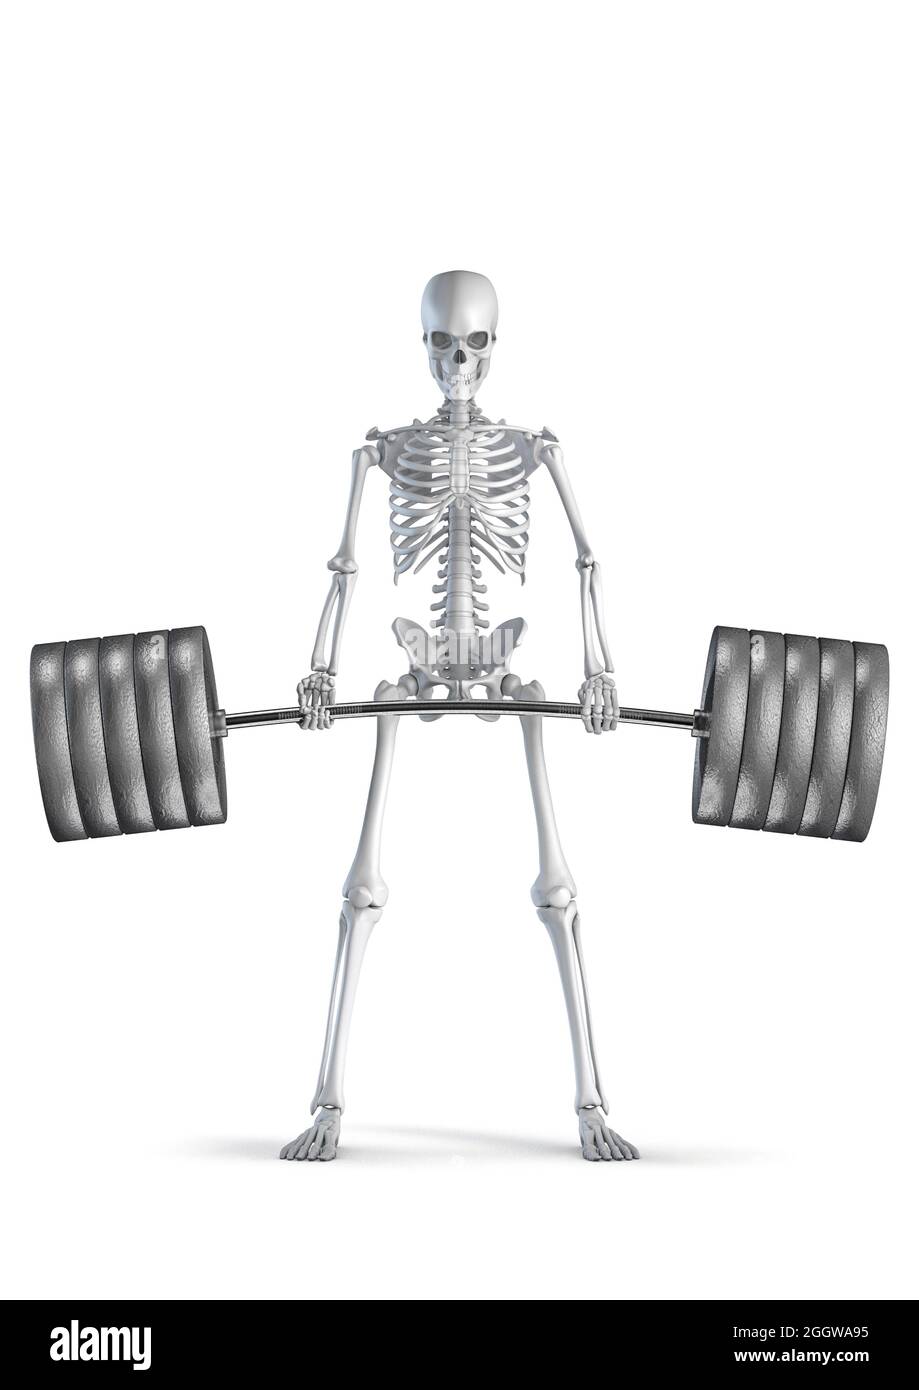 Fitness skeleton deadlift - illustrazione 3D di uomo scheletro figura sollevamento pesante barbell isolato su sfondo bianco studio Foto Stock